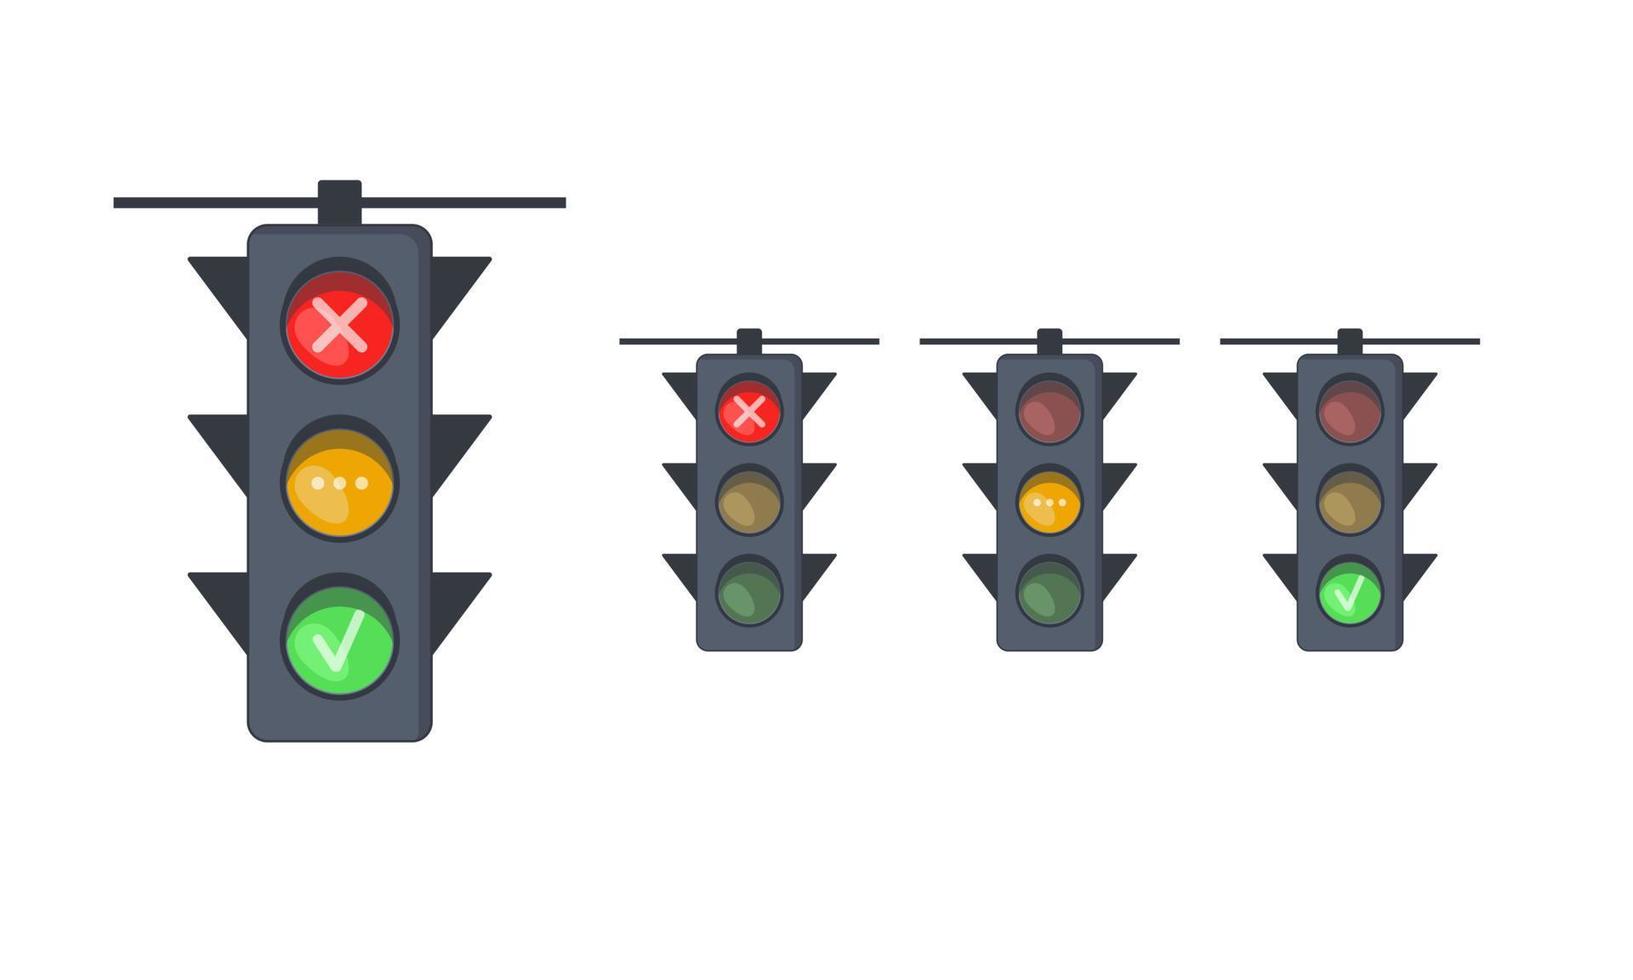 conjunto de semáforos con señales rojas, amarillas y verdes. semáforos con señales de prohibición, permiso y espera. equipos para control de movimiento de carreteras. vector